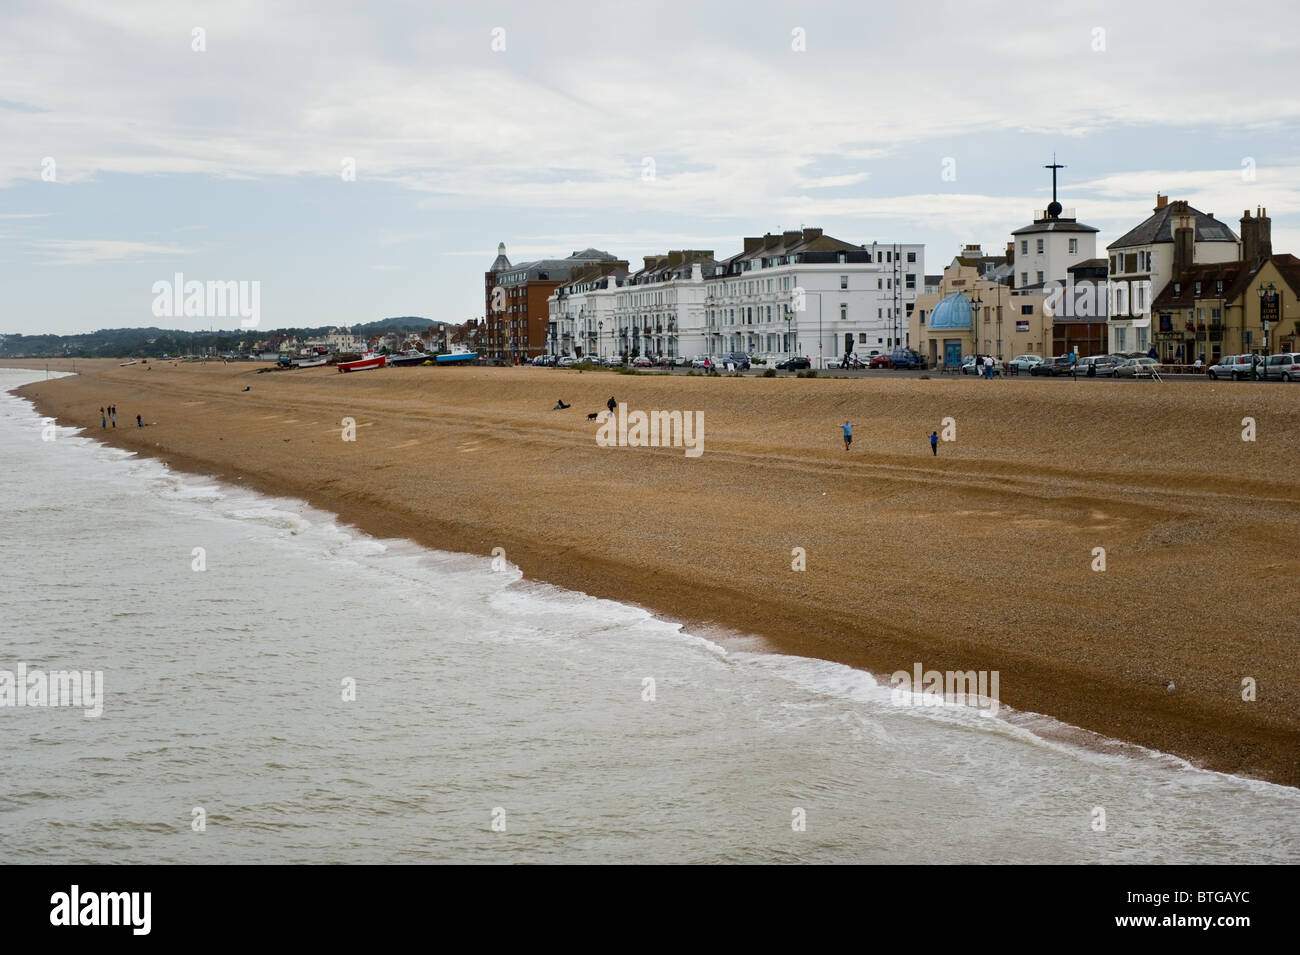 El paseo marítimo y la playa de Herne Bay en Kent, UK Foto de stock